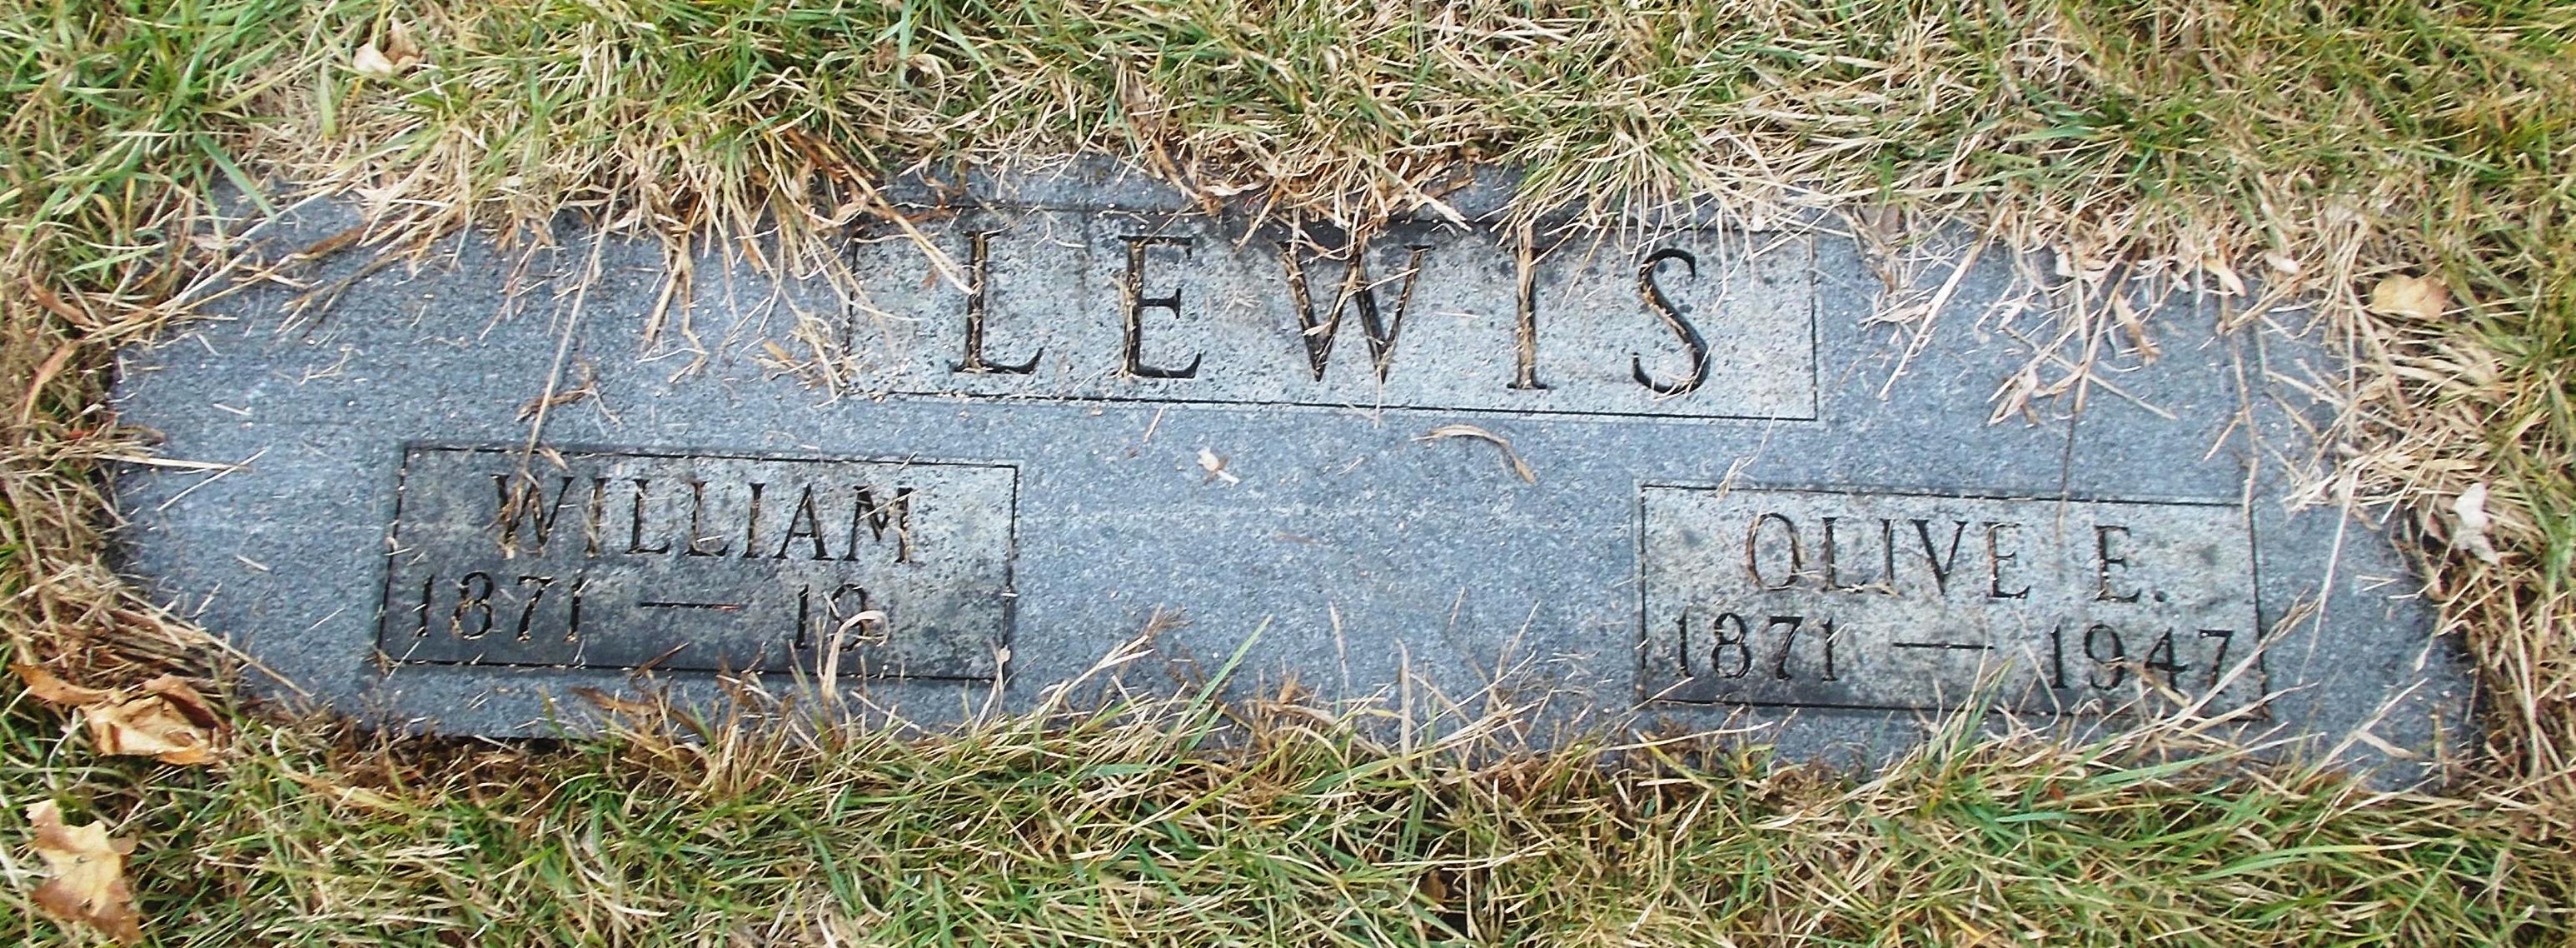 Olive E Lewis